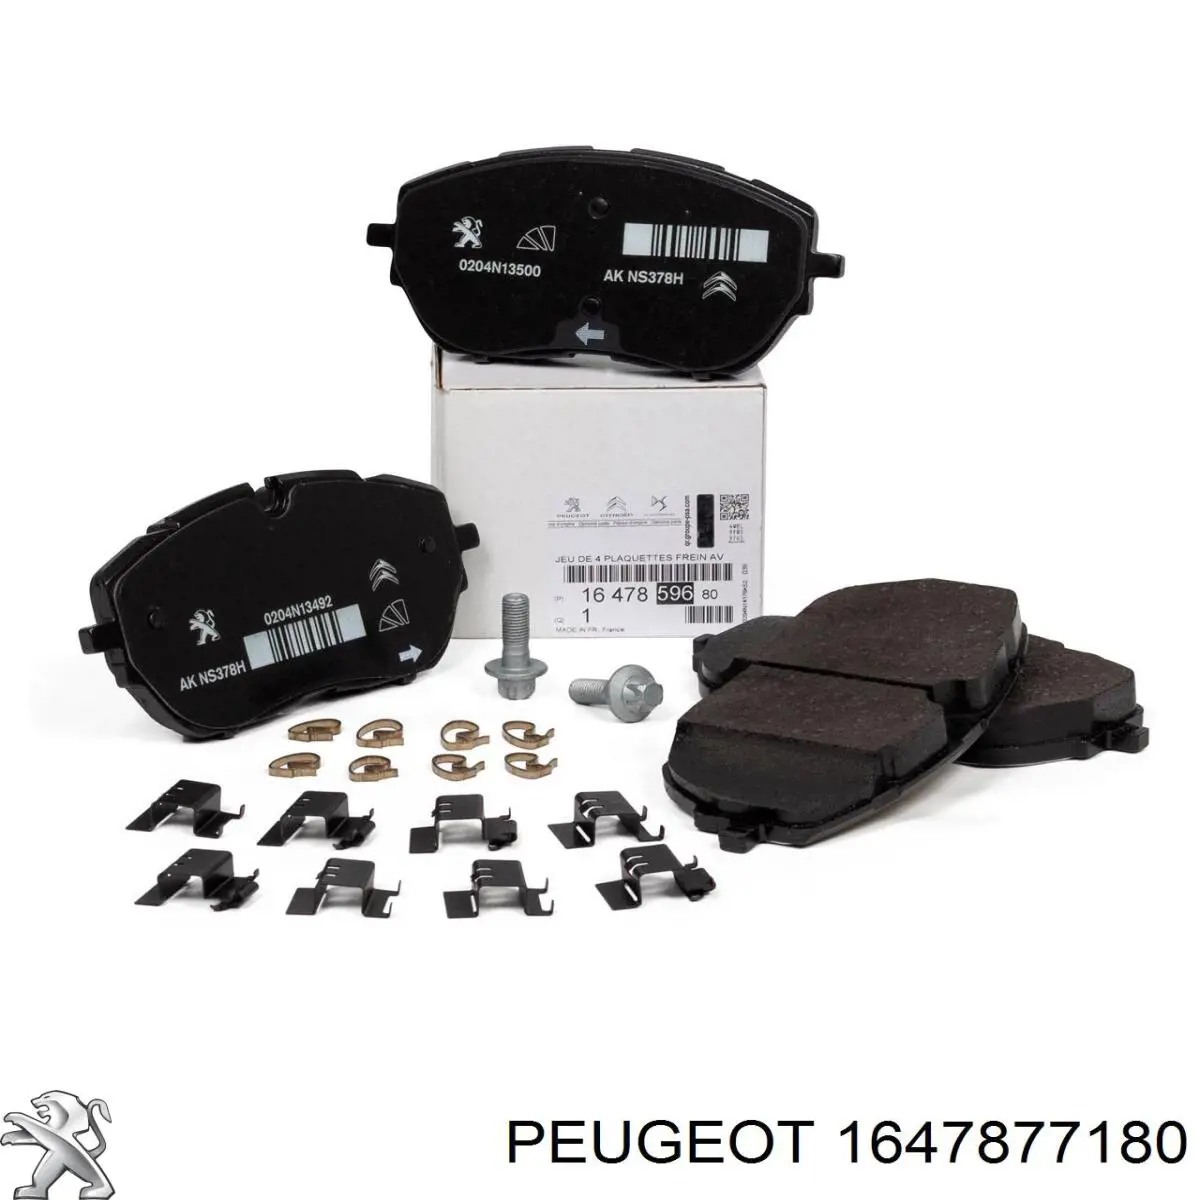 1647877180 Peugeot/Citroen колодки тормозные передние дисковые